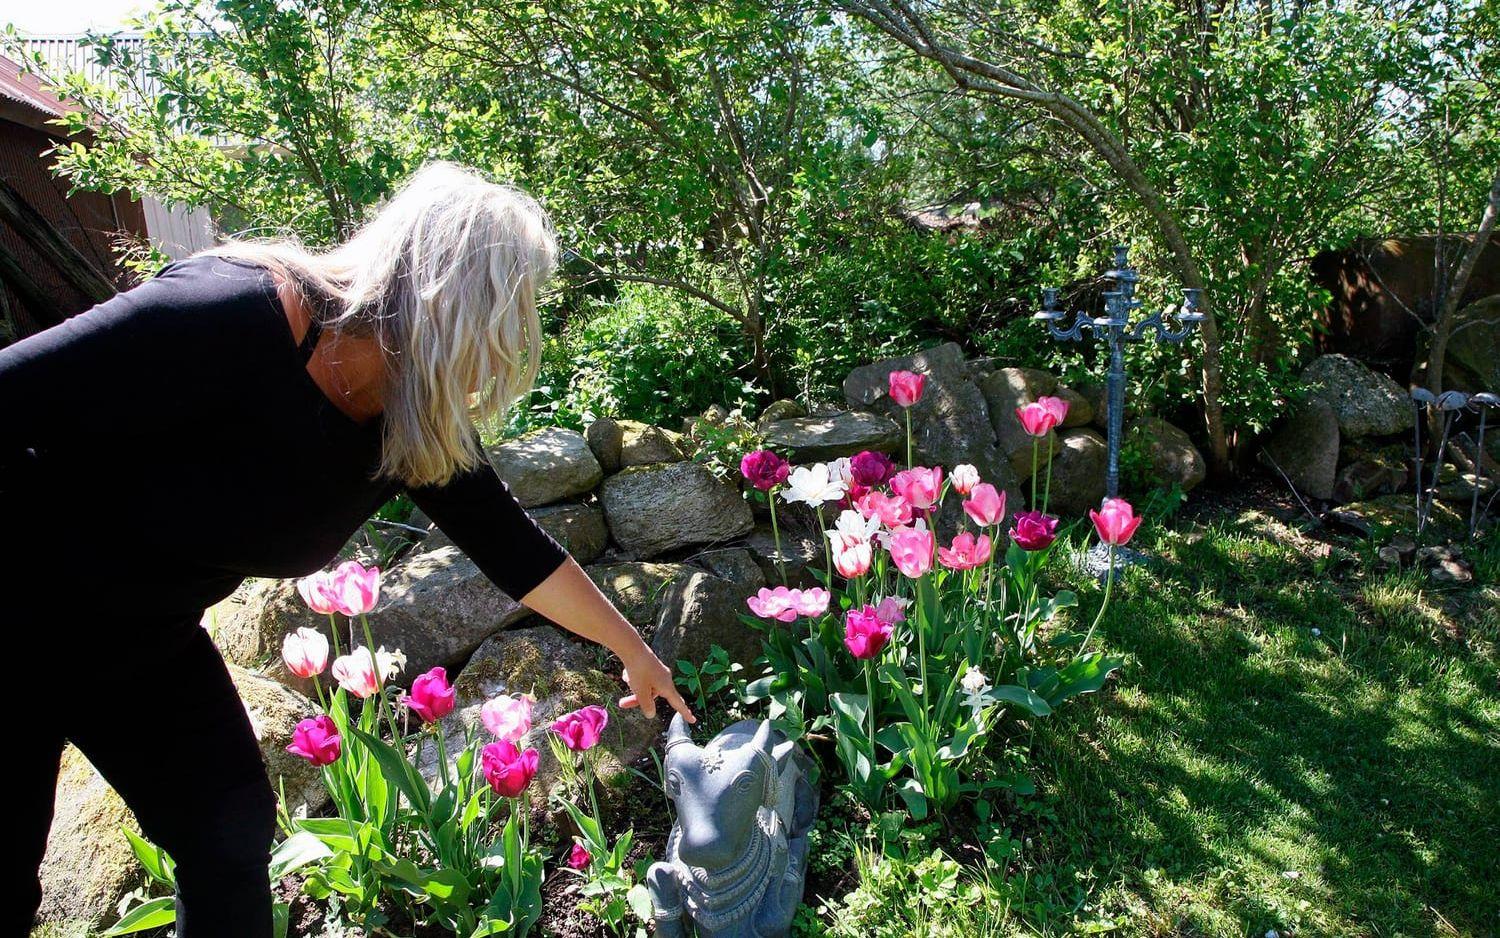 ”Men kolla de där tulpanerna, de är helt otroliga. Ingen skulle behöva jobba i maj månad”, säger Carina. Bild: Linda Glendell